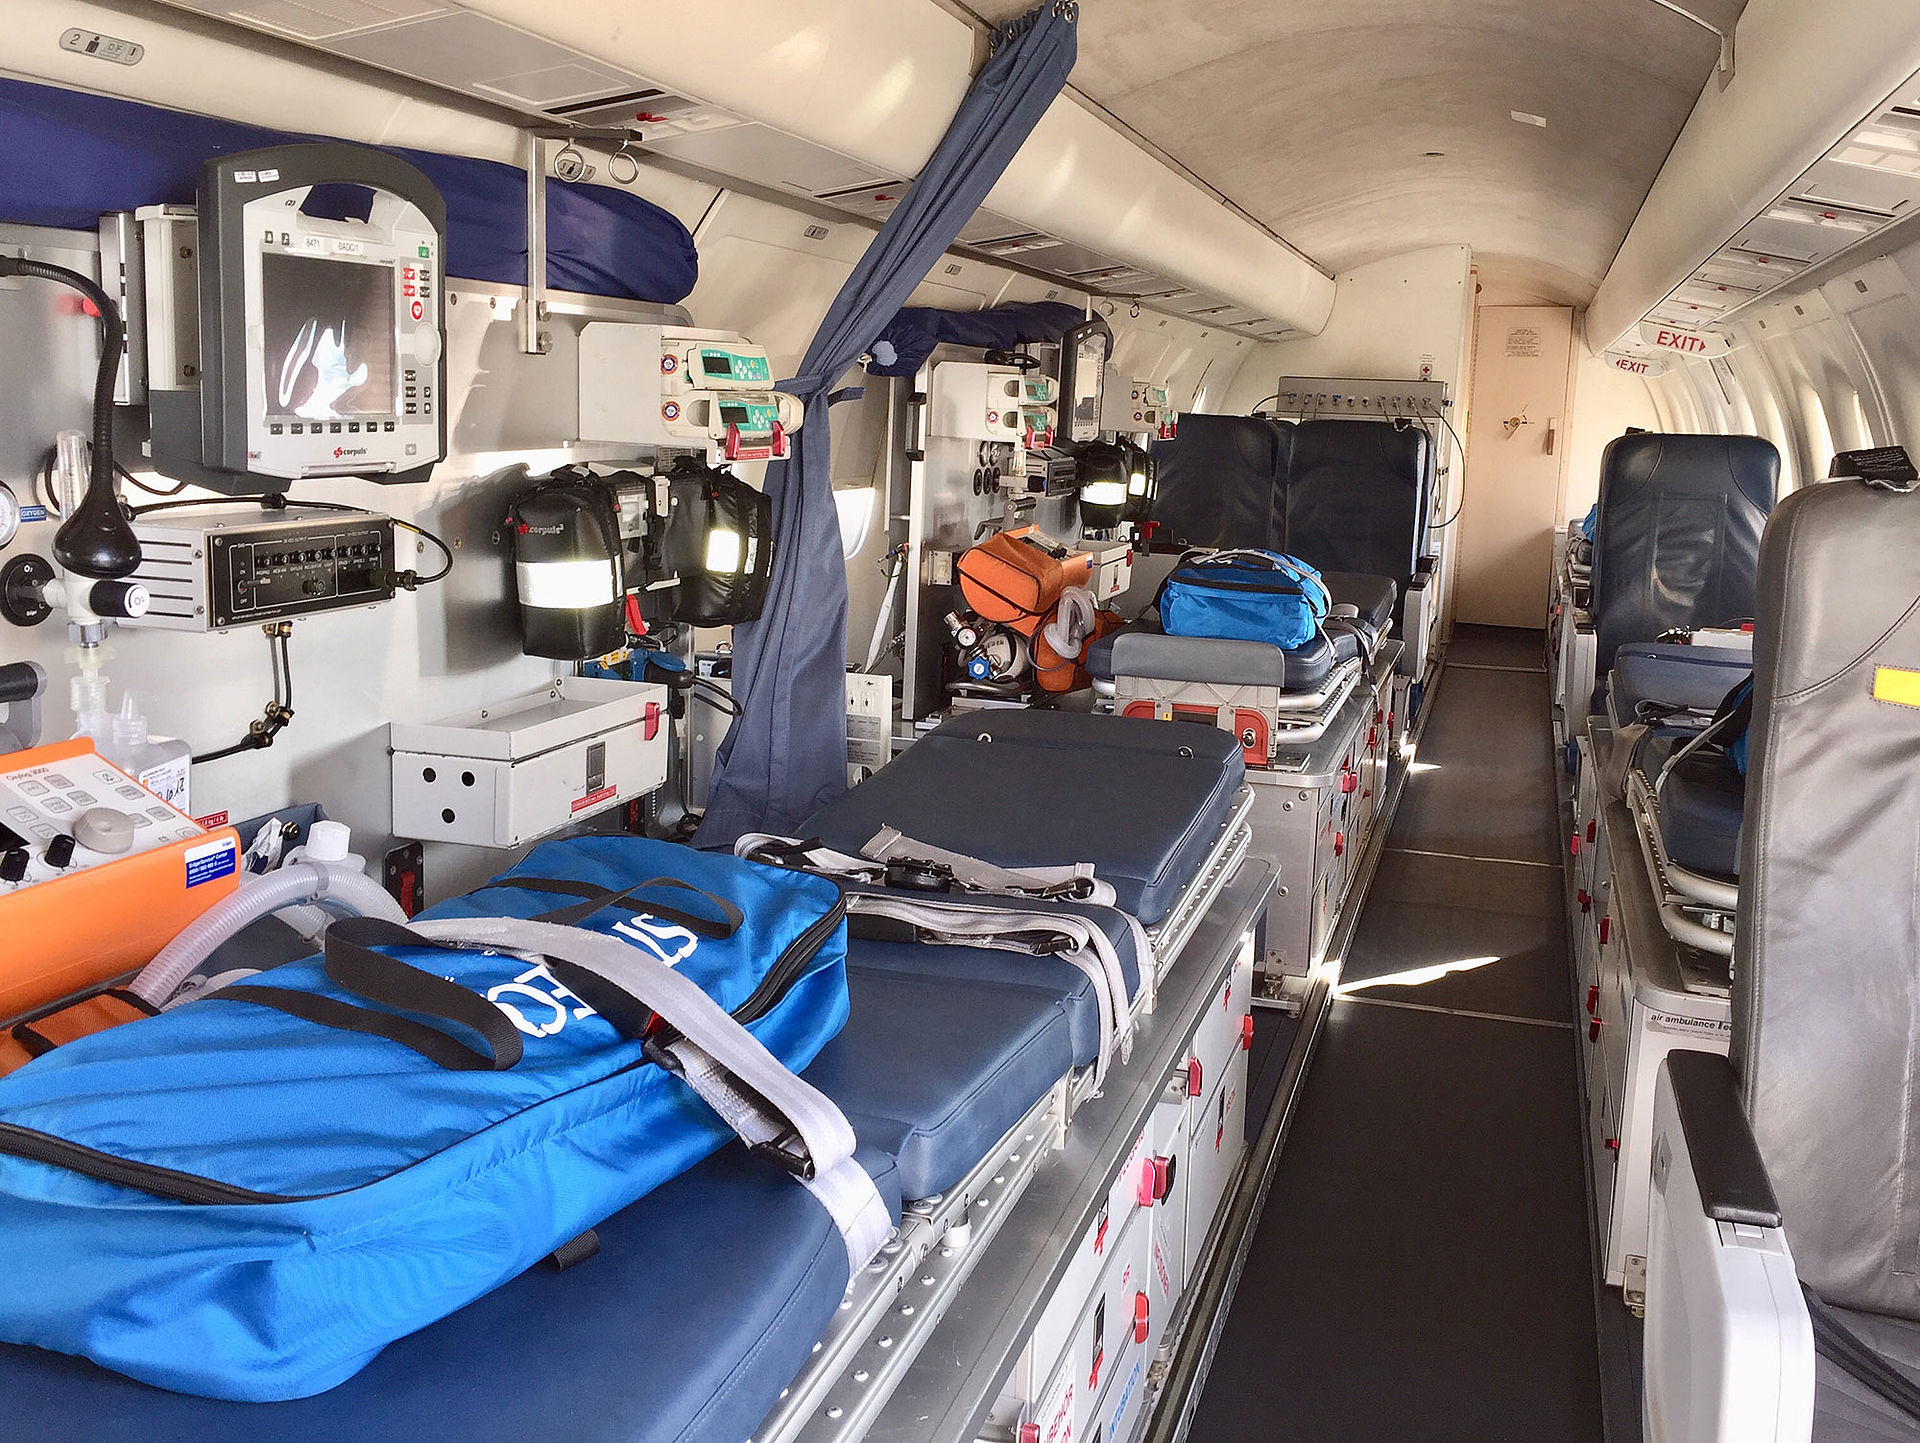 Kabine eines Ambulanz-Jets: Dornier 328Jet 